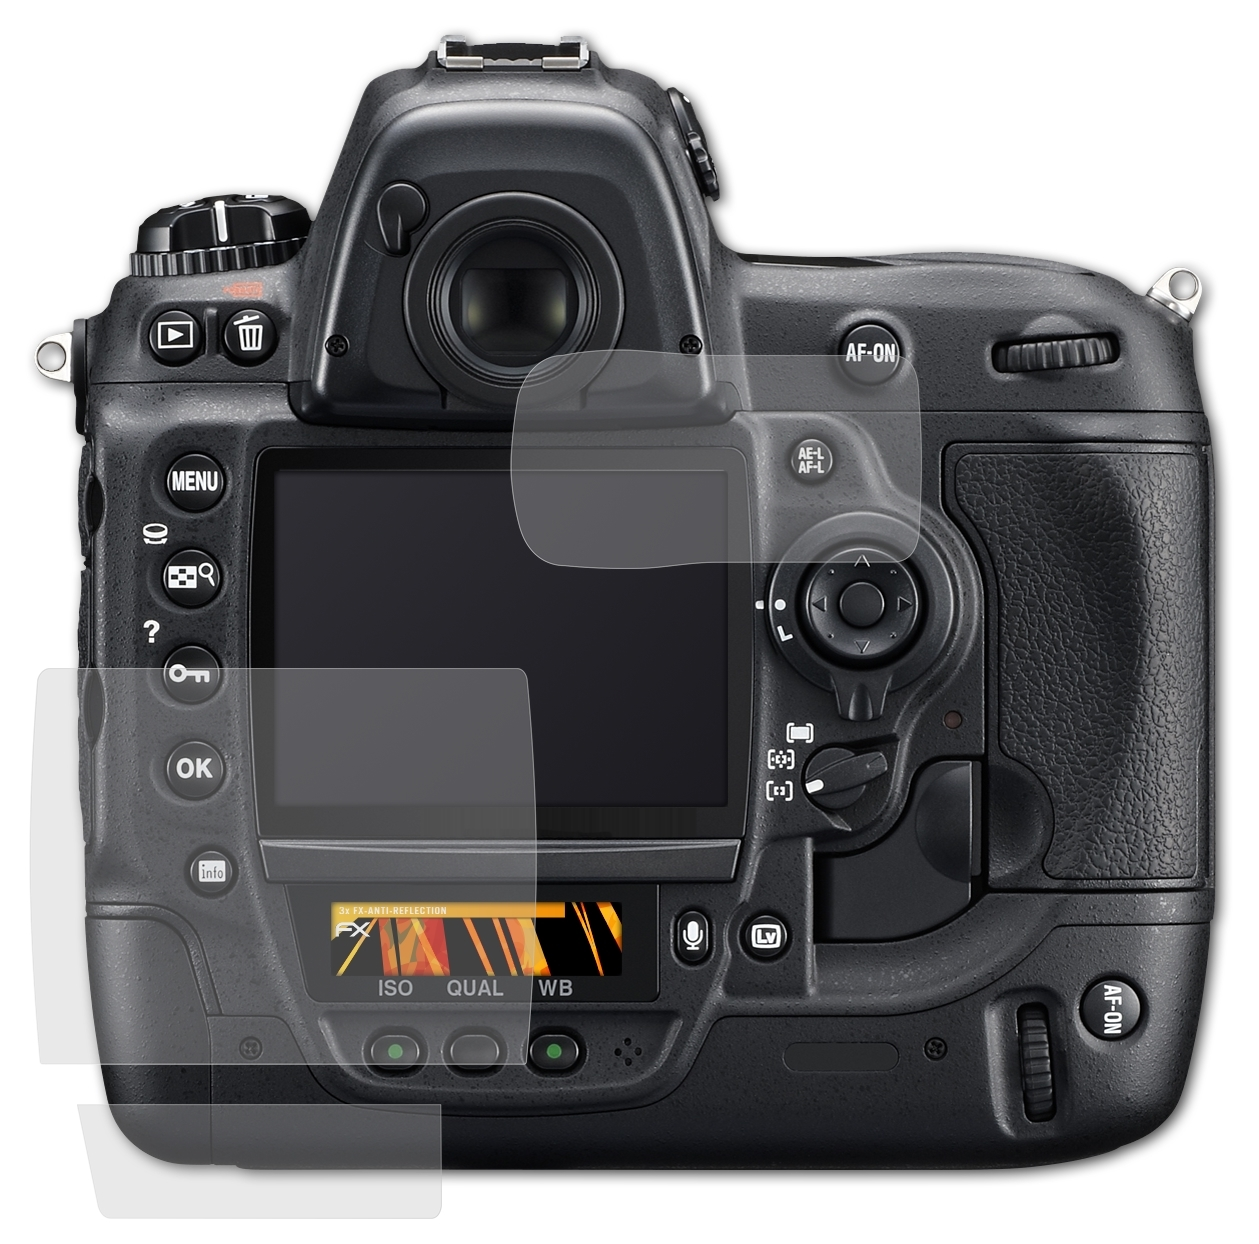 ATFOLIX 3x FX-Antireflex Displayschutz(für Nikon D3s)